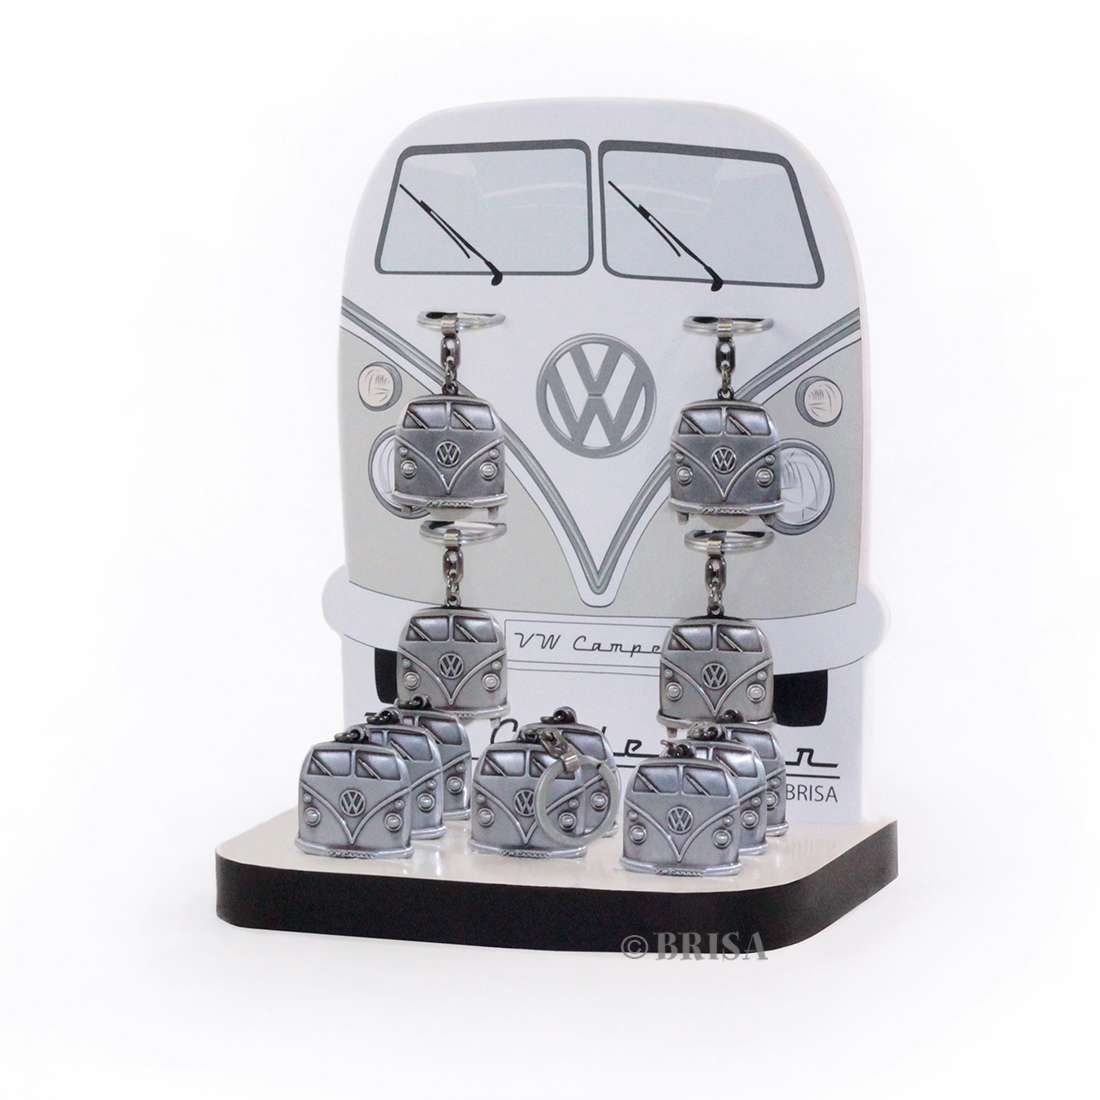 VOLKSWAGEN BUS VW T1 Combi Porte-clés avec jet pour les chariots d'achat en boîte cadeau, set de 12 pièces en display  aspect argent antique